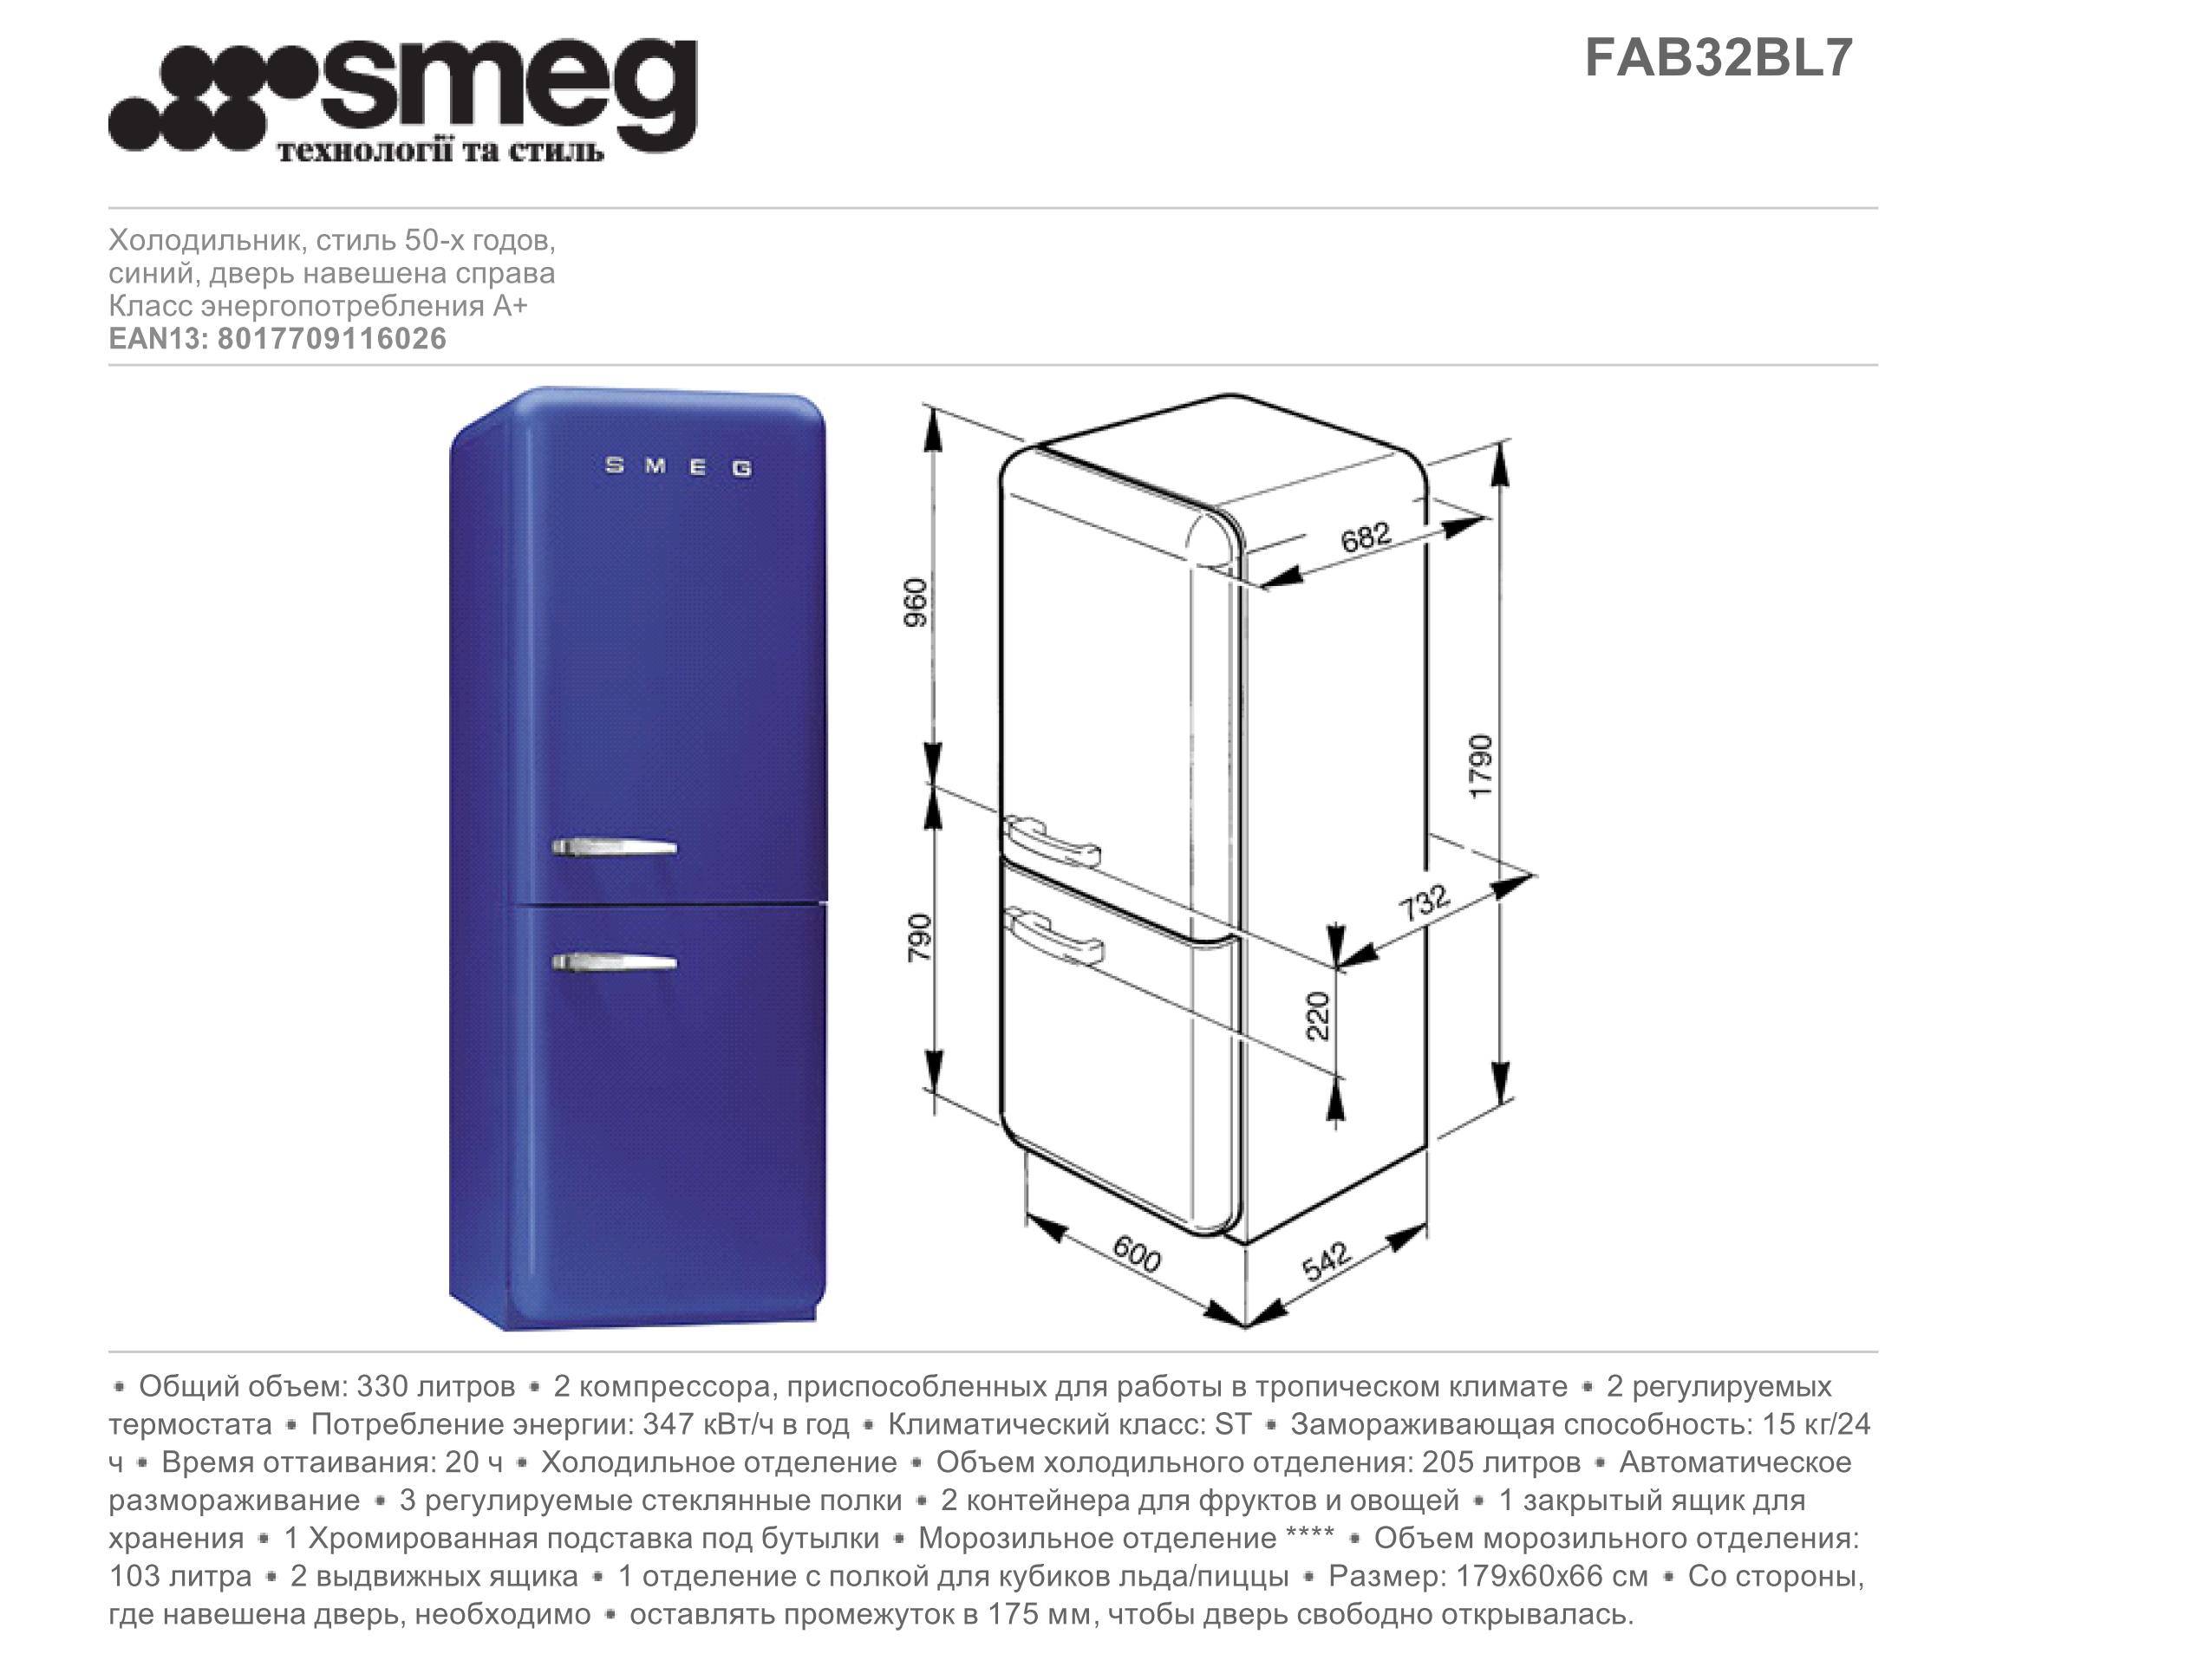 Холодильники размеры высота. Холодильник Smeg fab32rxn1 вес. Smeg fab5lrd5 чертеж. Холодильник Smeg fab50lrd. Мини холодильник Смег чертеж.